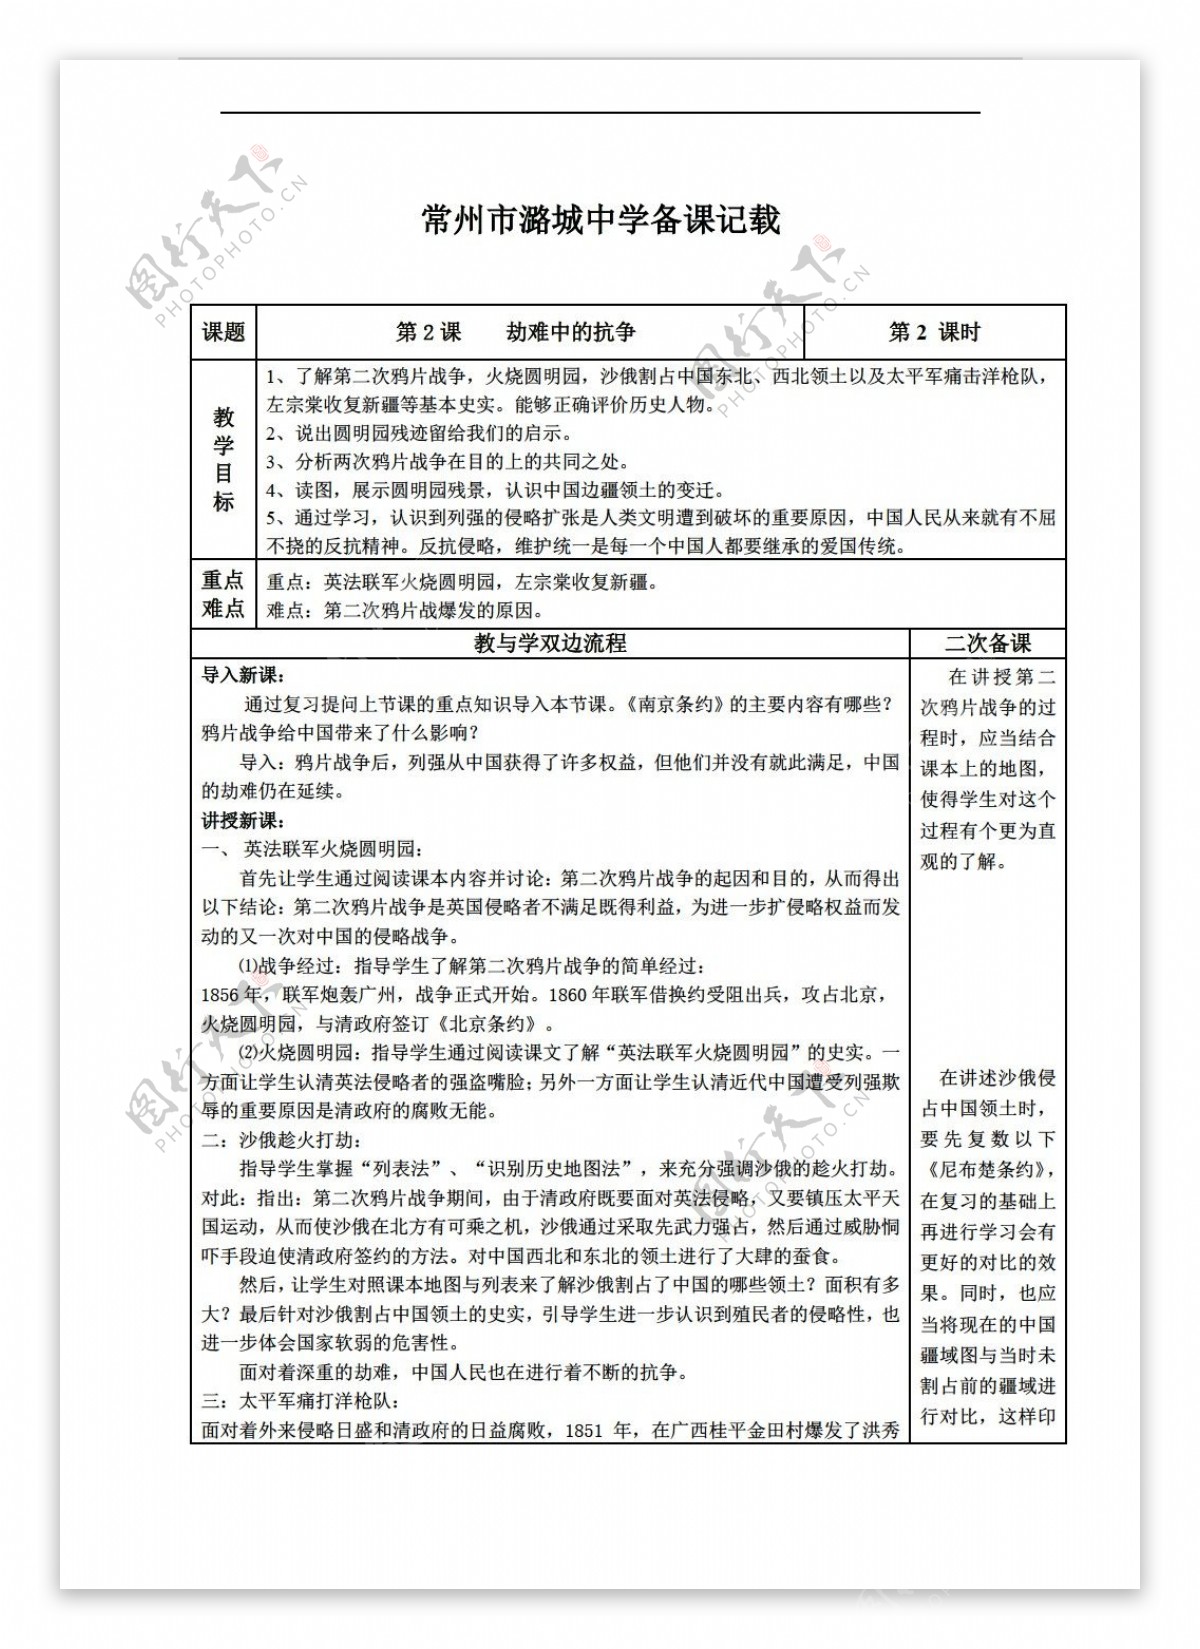 八年级上册历史江苏省八年级上册2劫难中的抗争教学设计表格式